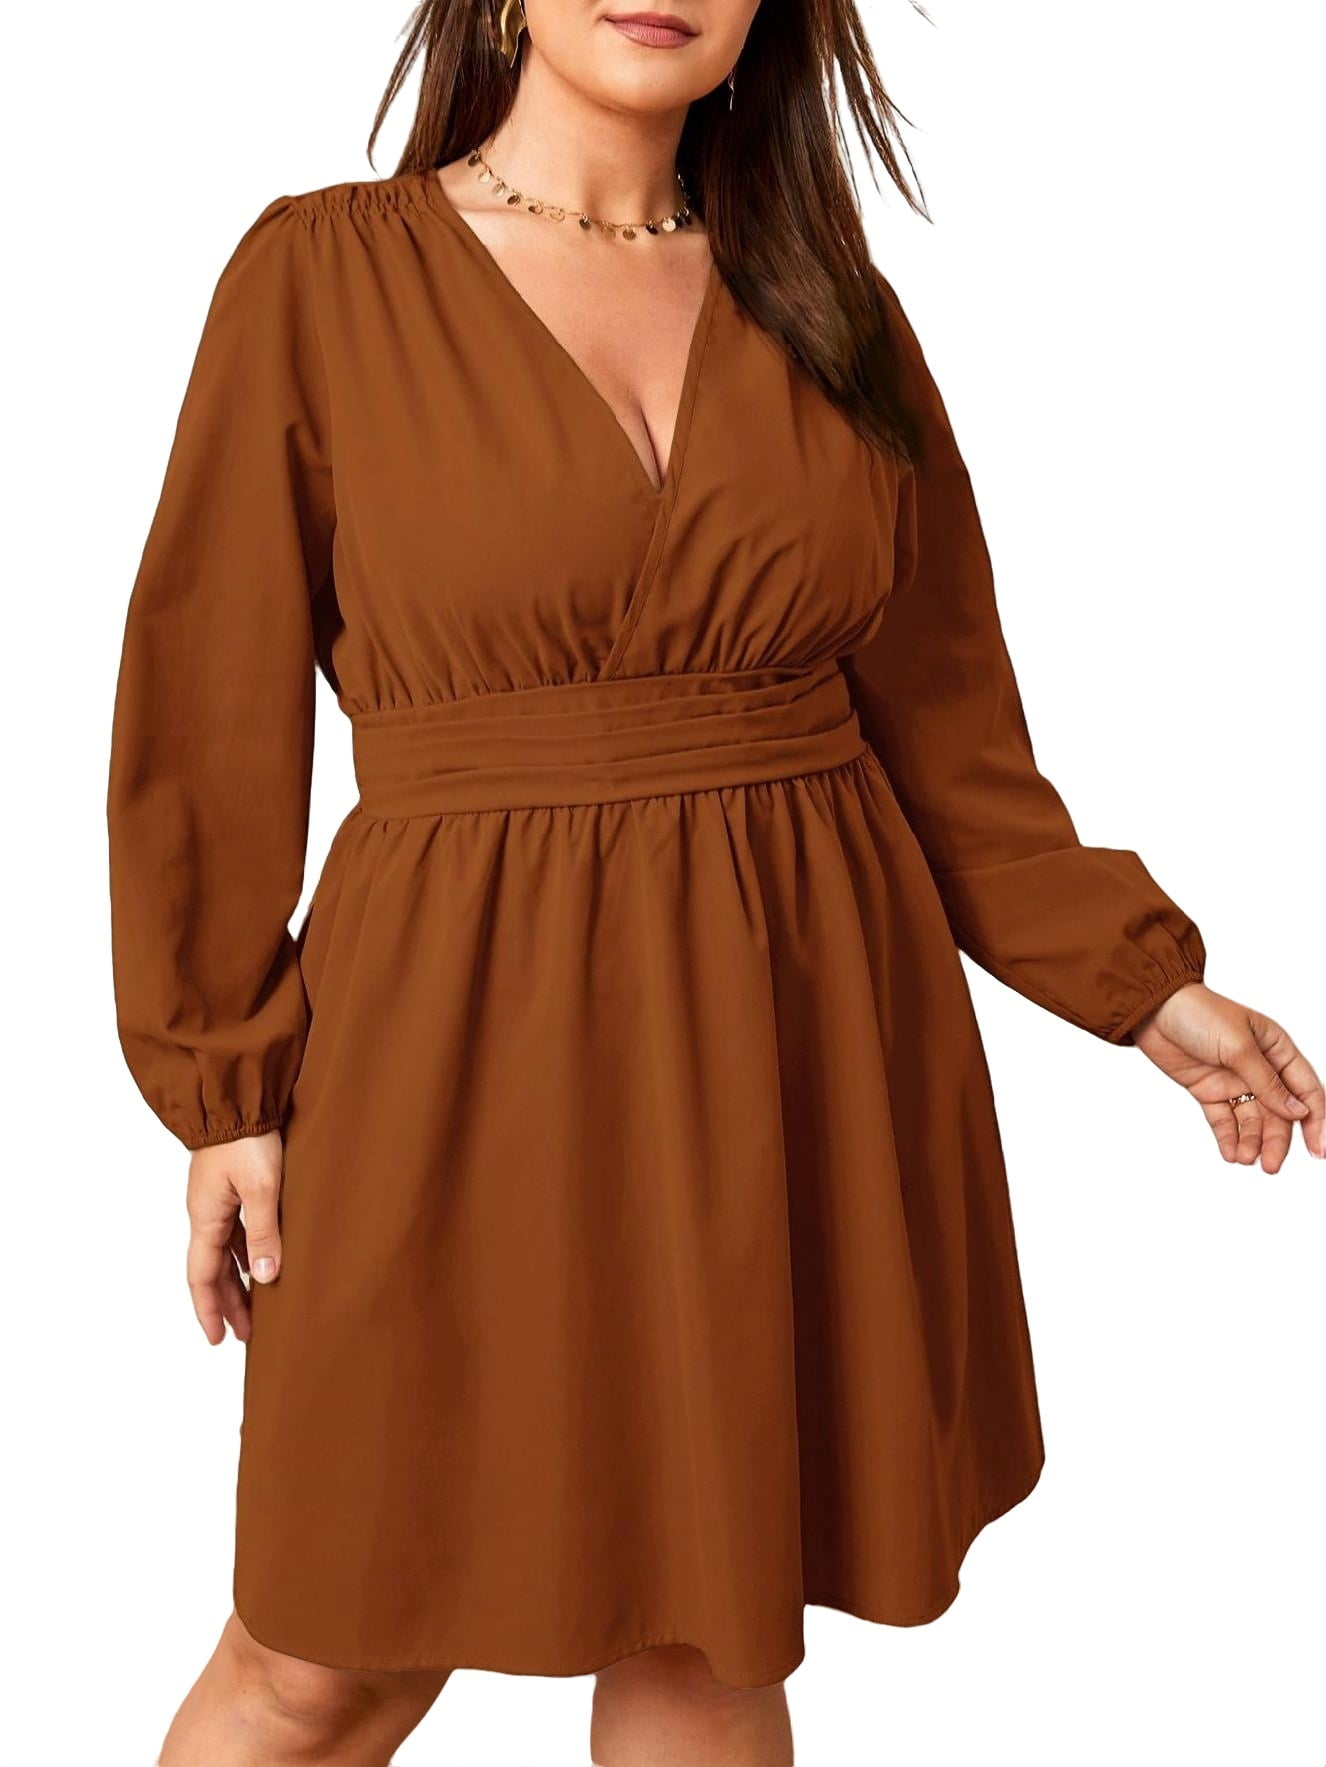 brown plus size dress